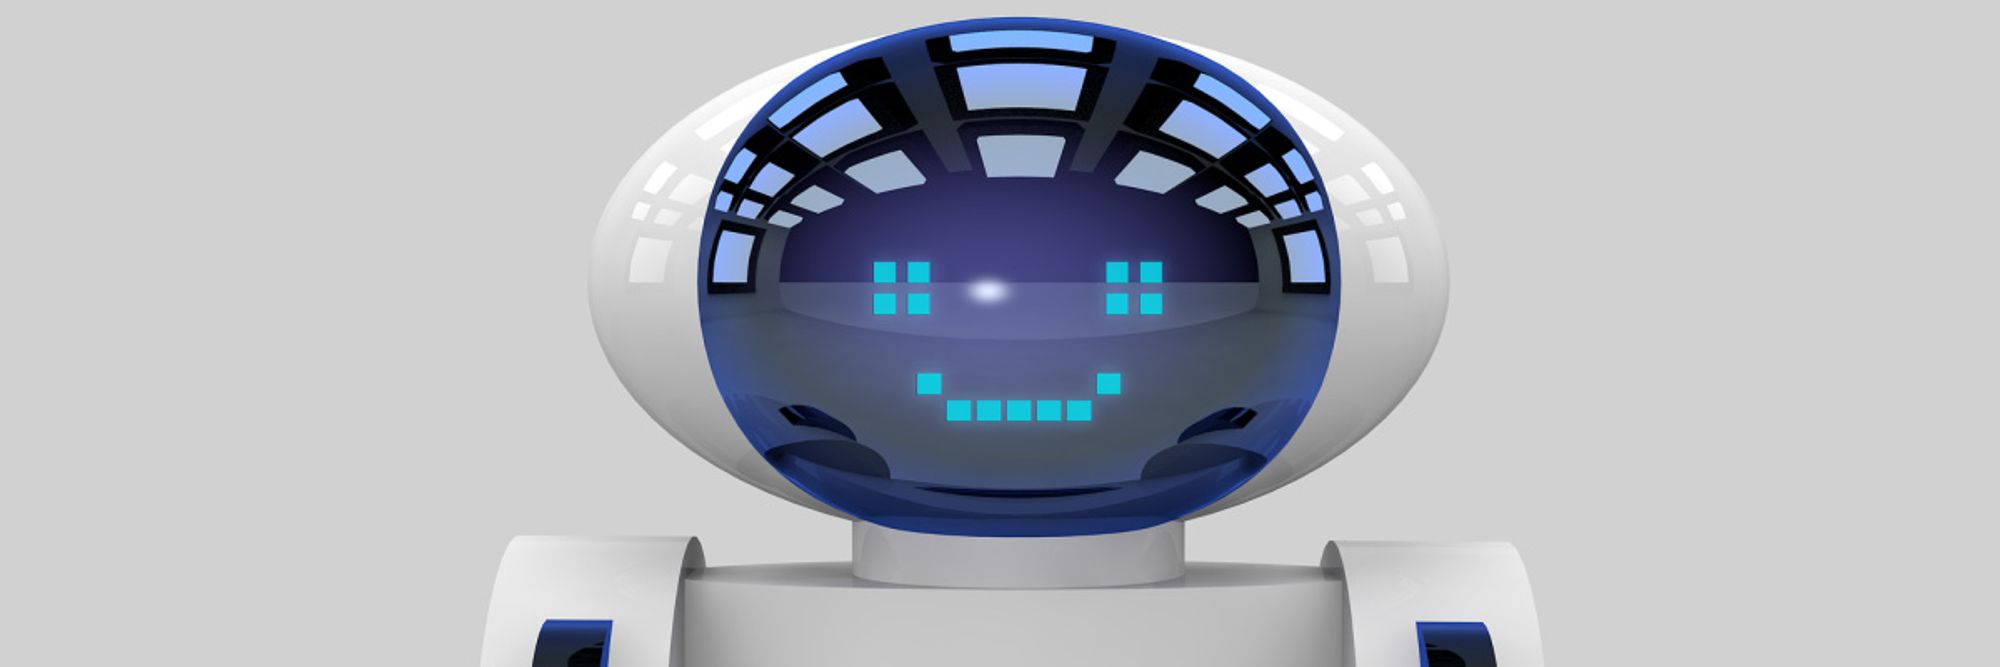 En bild på en vit robot med blåa lampor till ögon och en mun som ler.